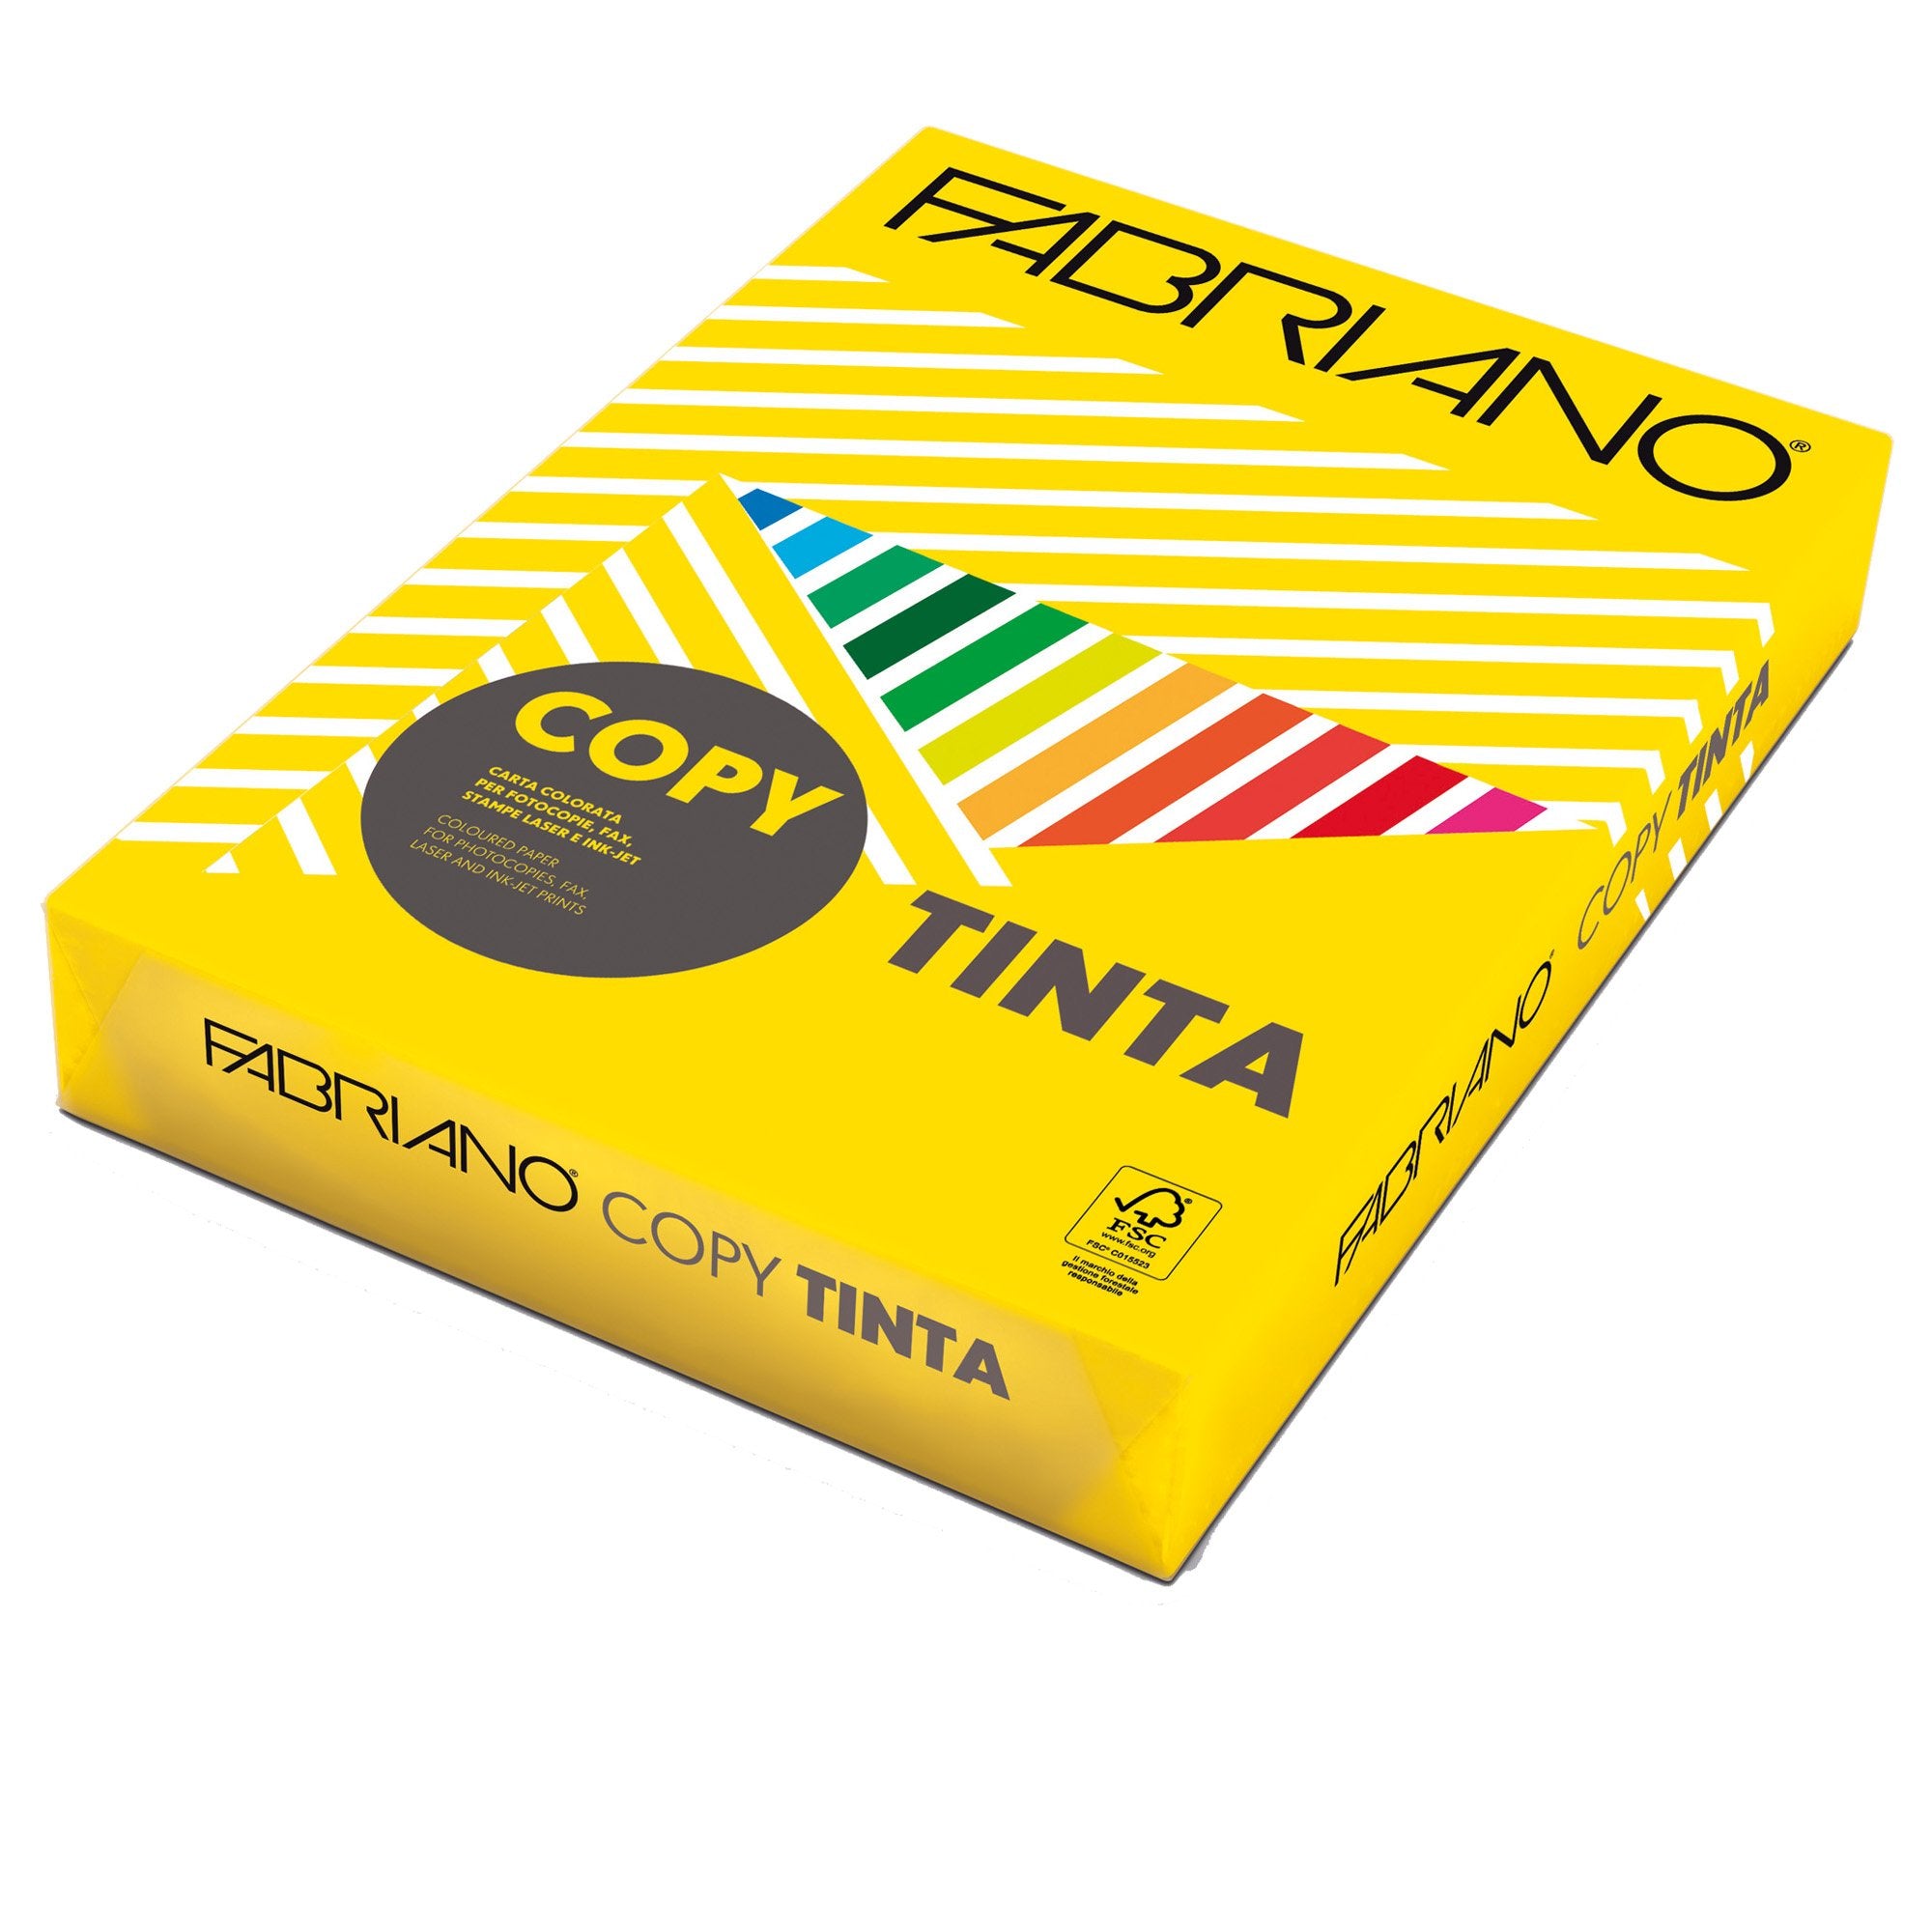 fabriano-carta-copy-tinta-a3-80gr-250fg-col-forti-giallo